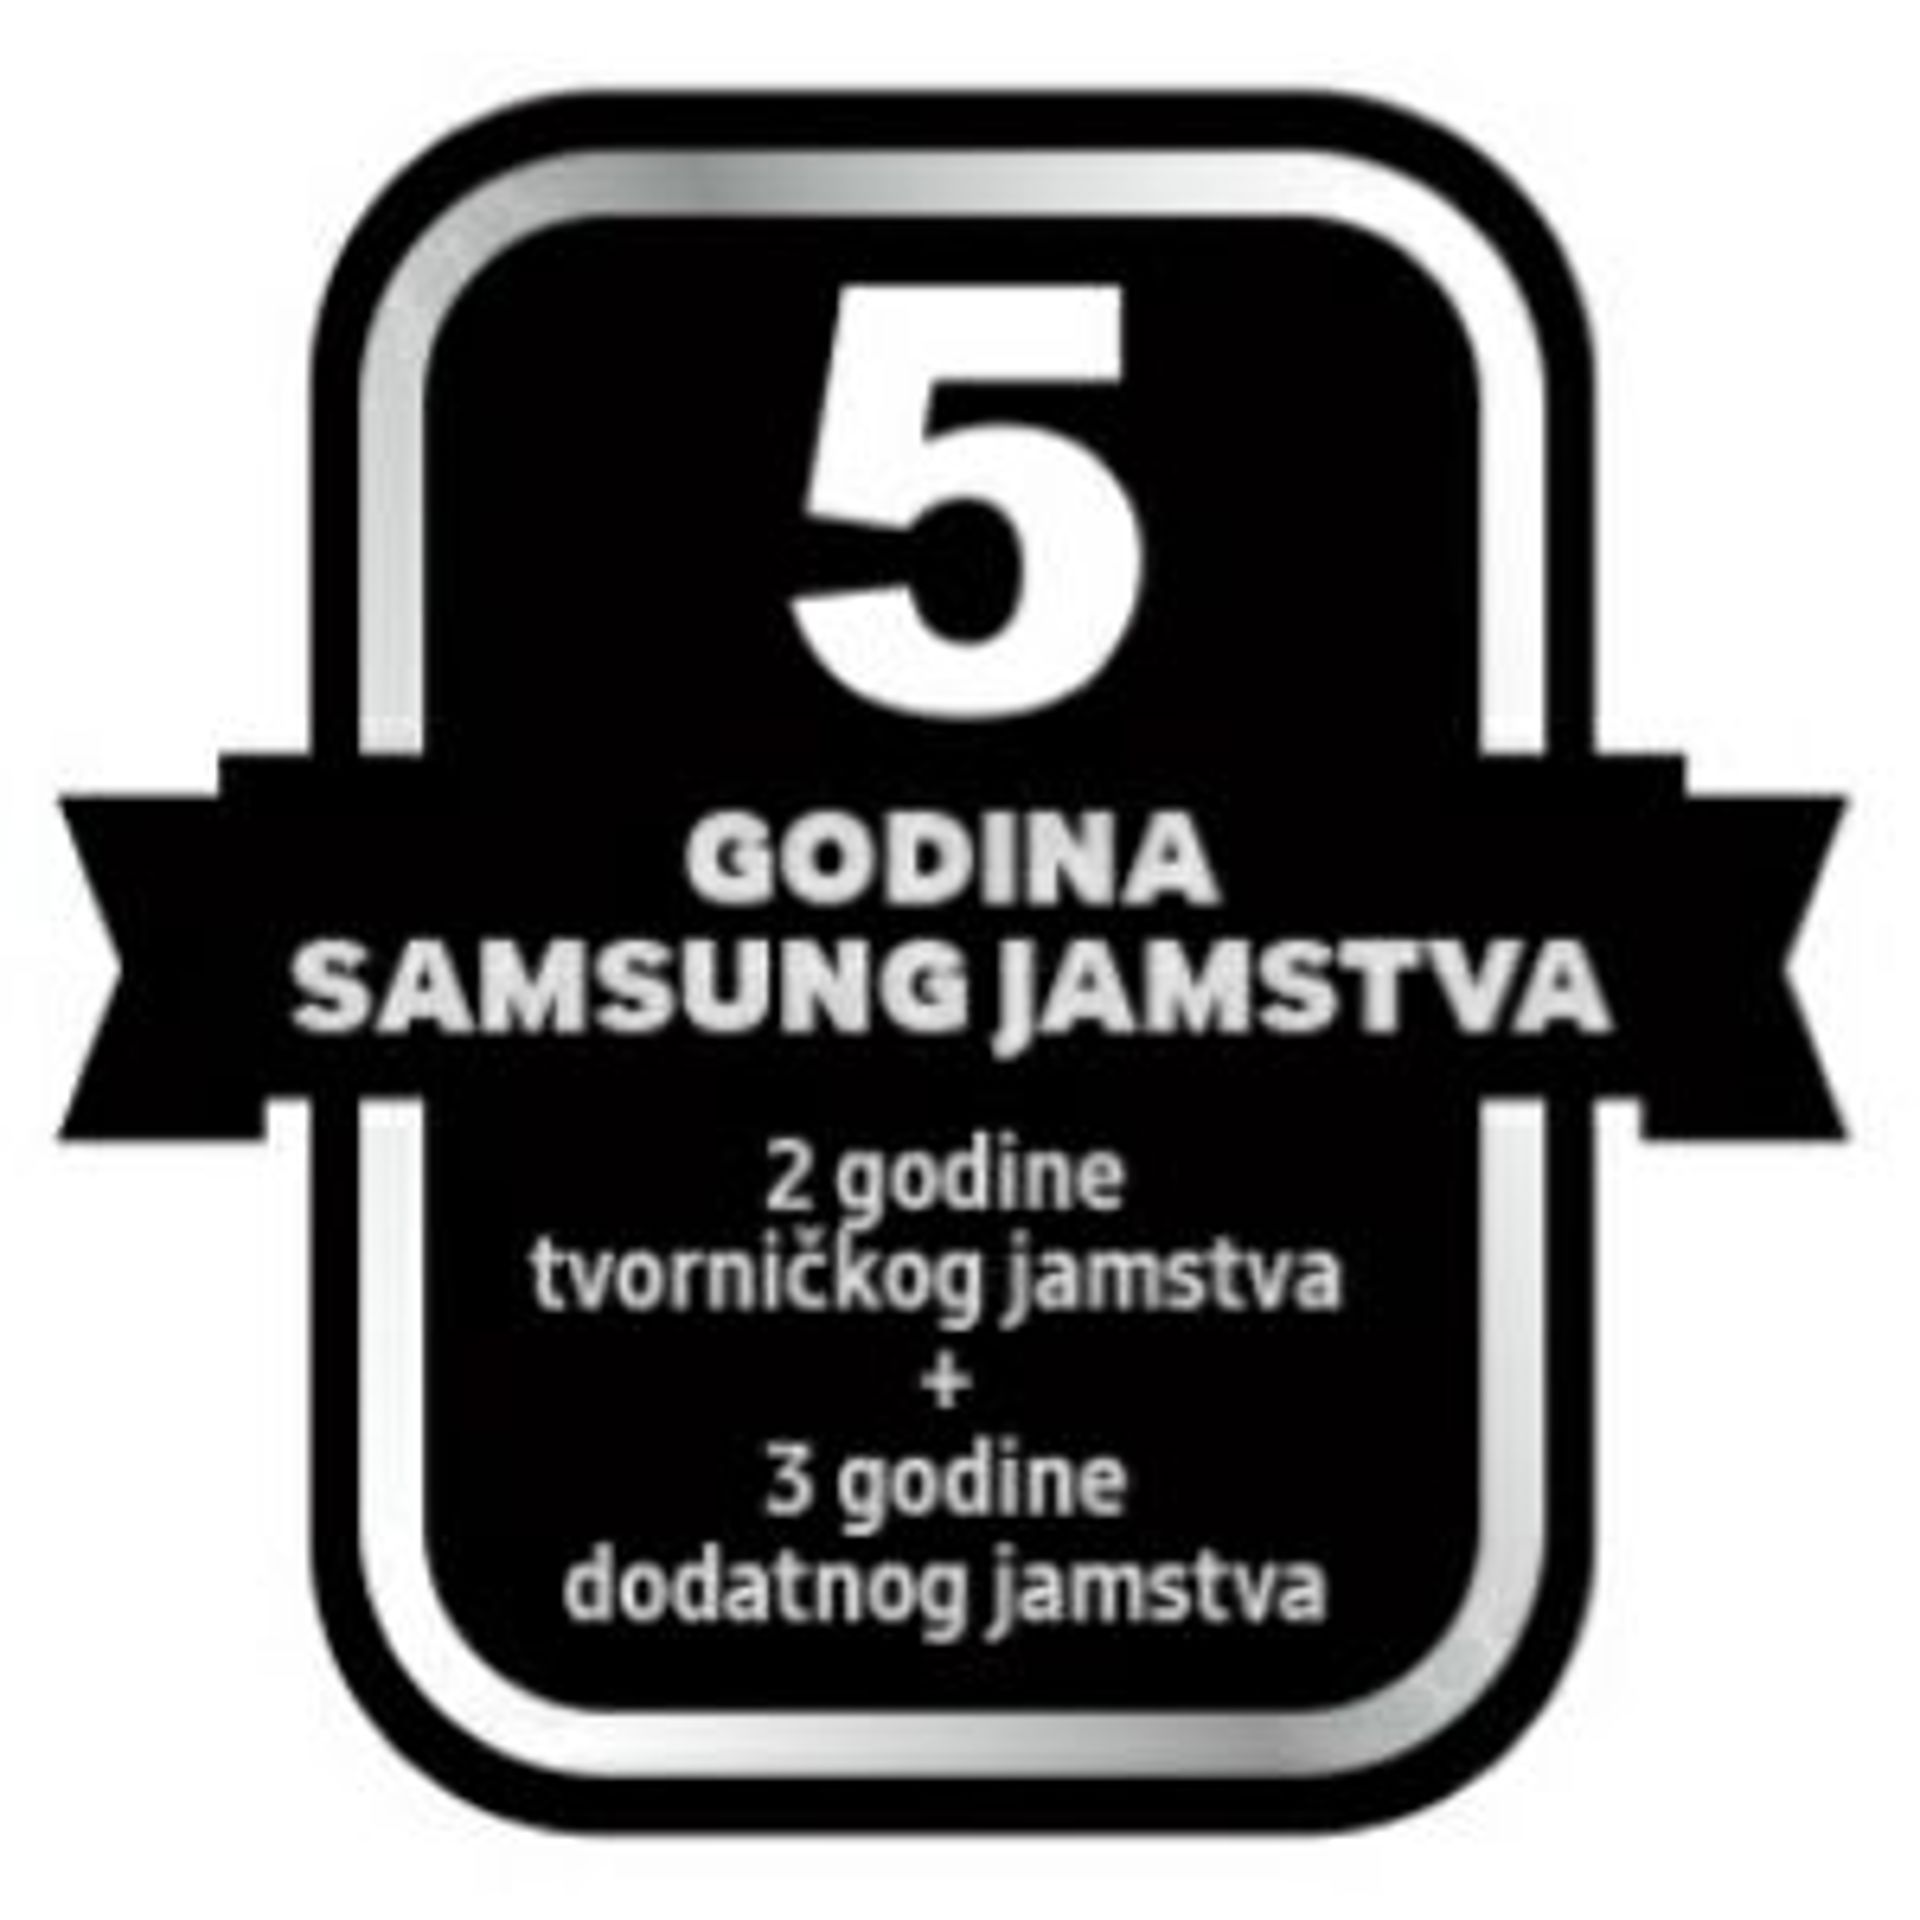 2 godine tvorničkog jamstva + 3 godine dodatnog jamstva na Samsung bijelu tehniku